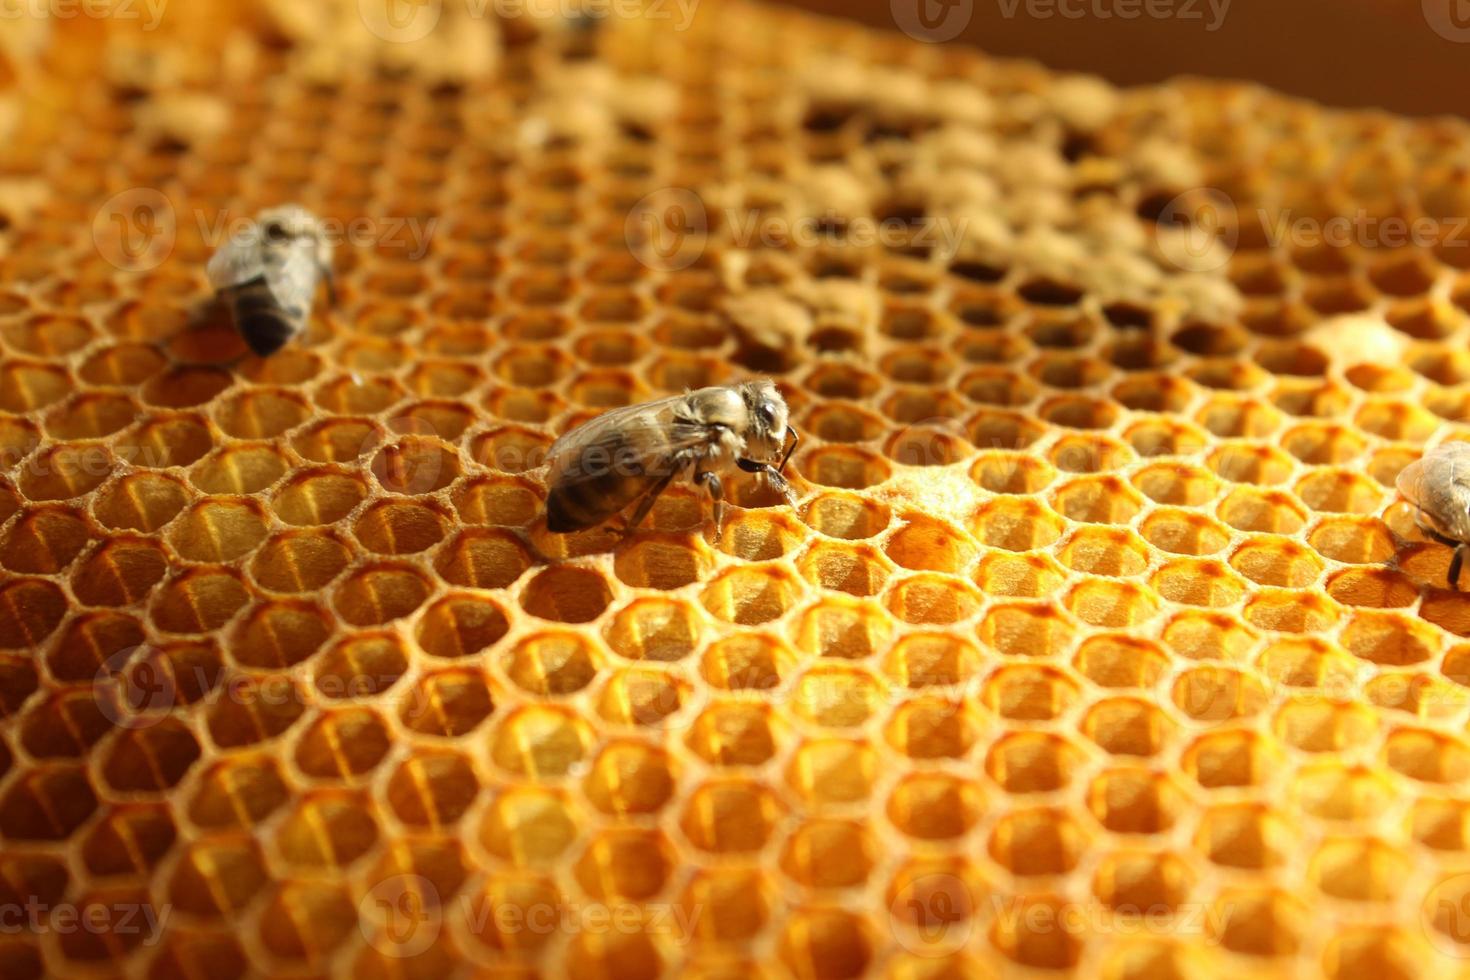 vista de cerca de la abeja recién nacida dentro de la colmena en el marco con miel, abeja joven en busca de comida, vista posterior, metamorfosis de la abeja de los cárpatos ucranianos foto